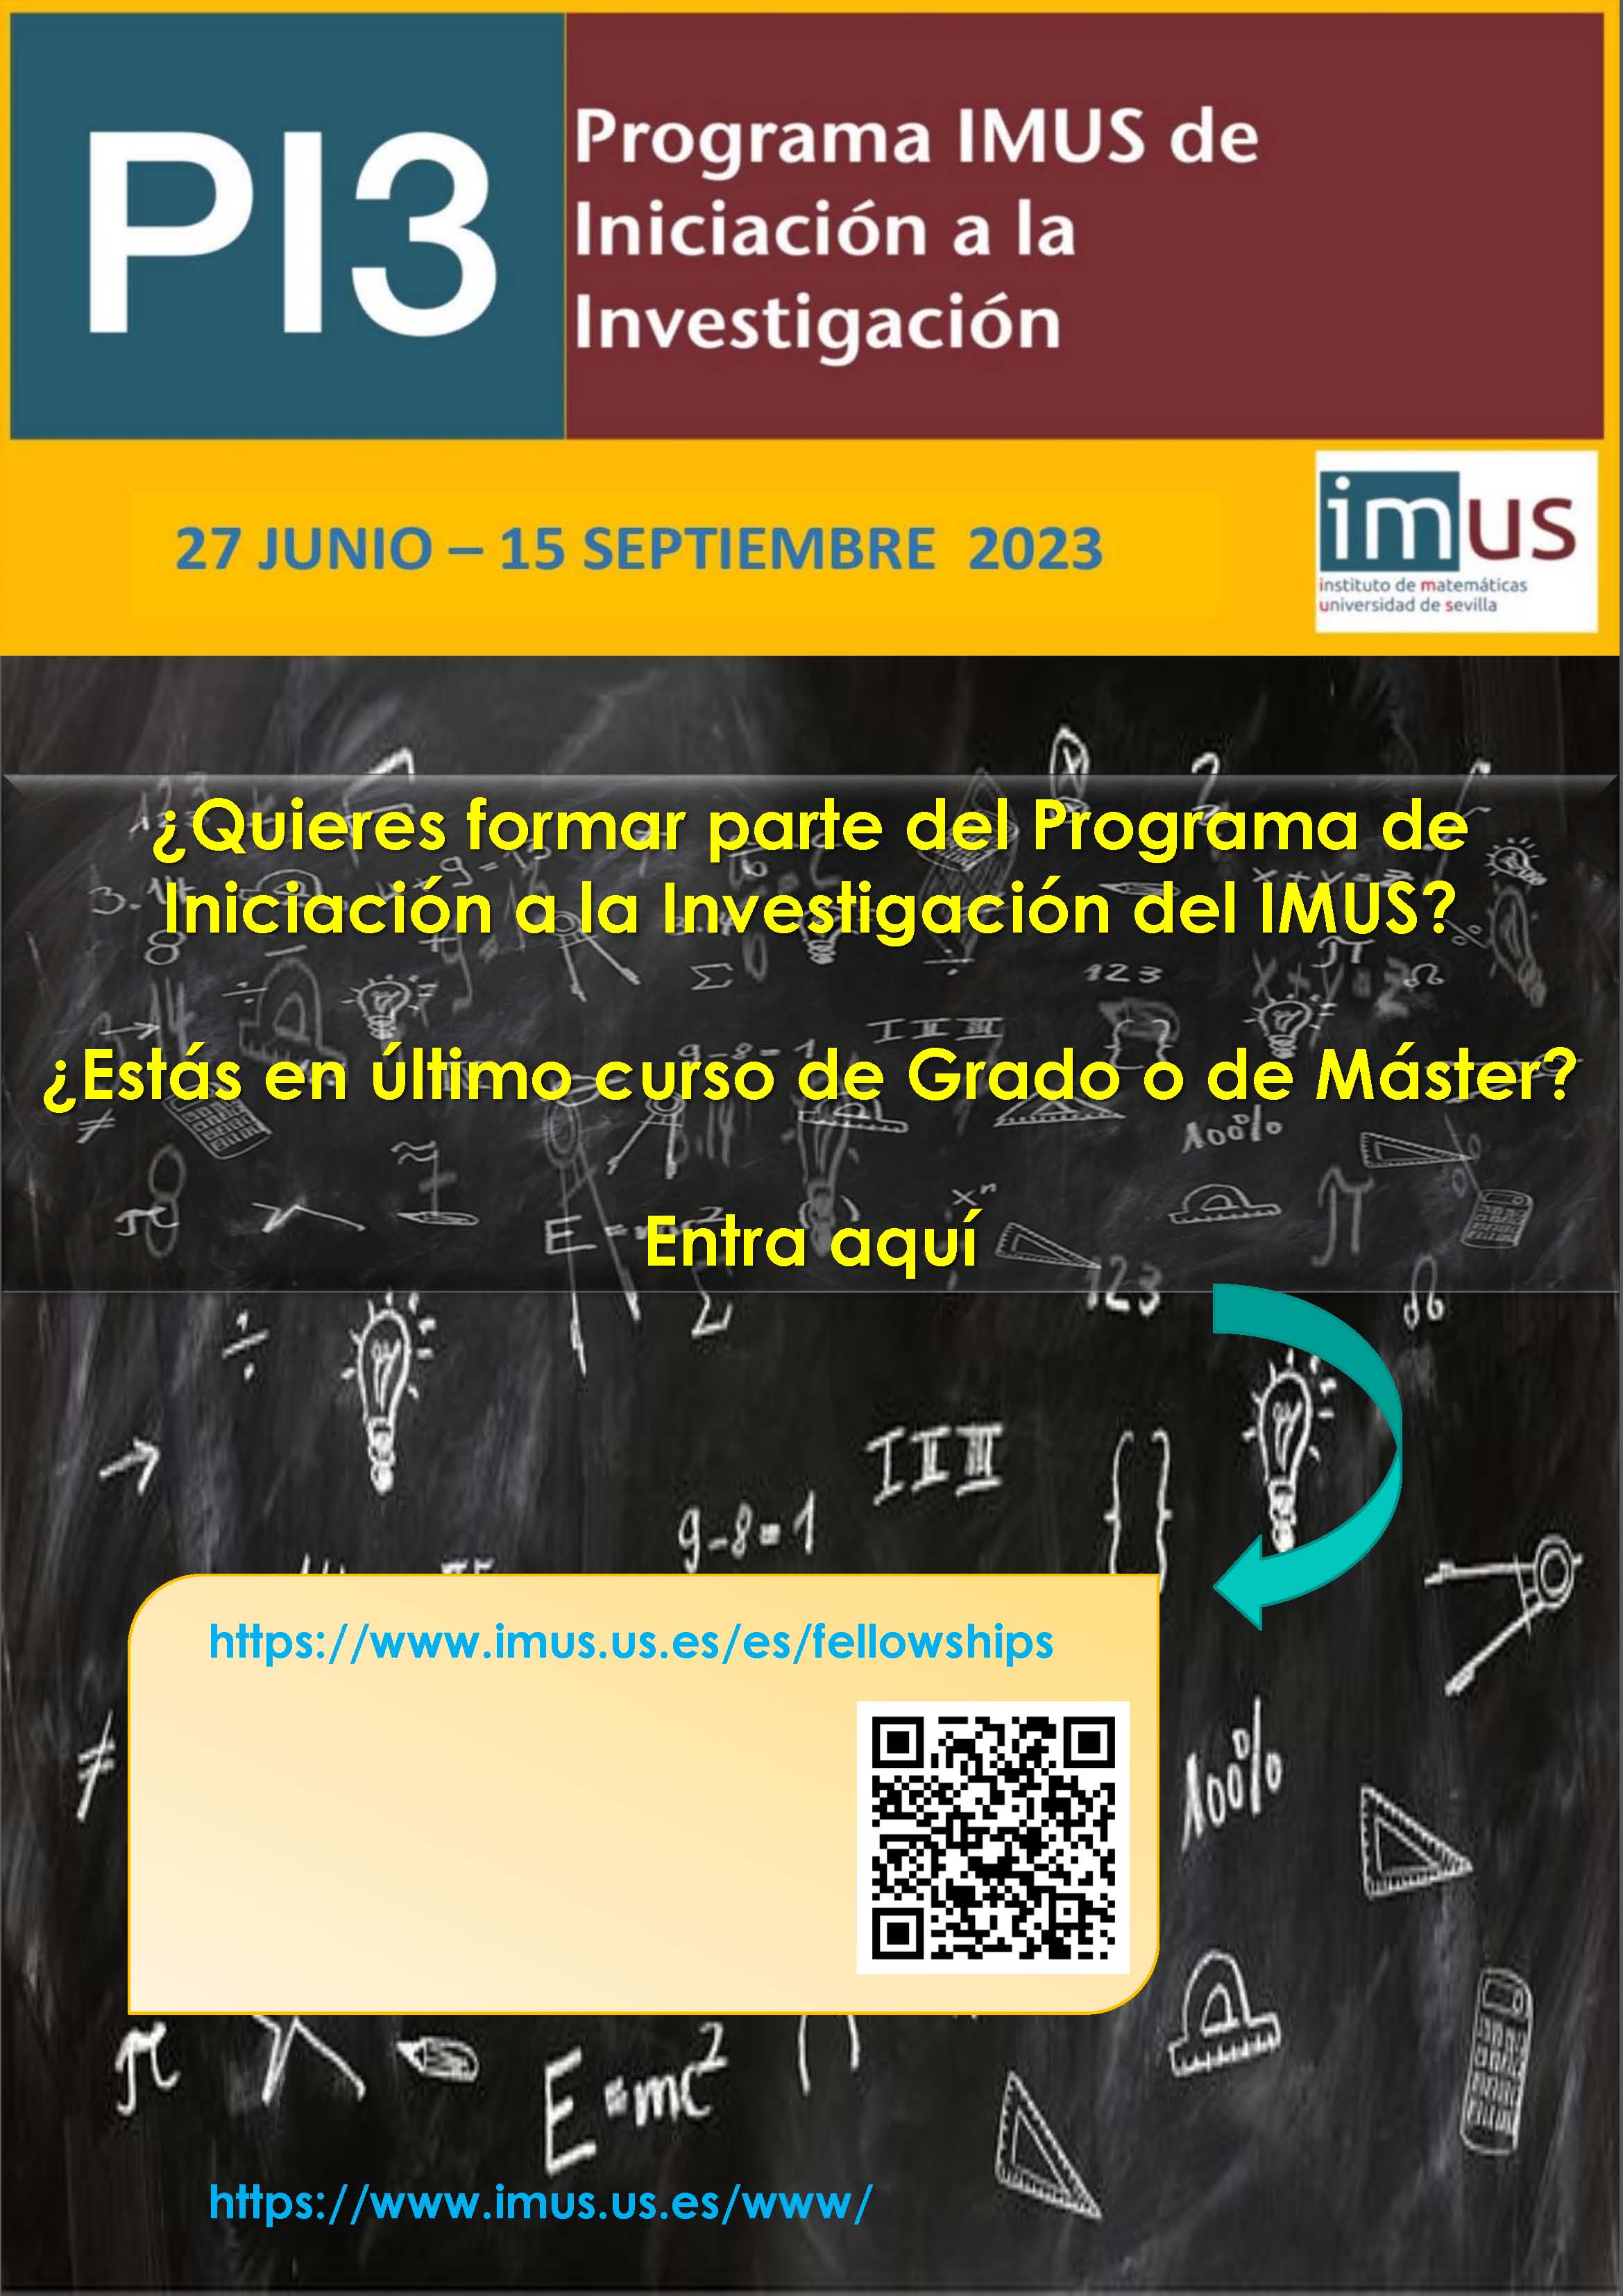 Programa de Iniciación a la Investigación del IMUS (PI3), 2023